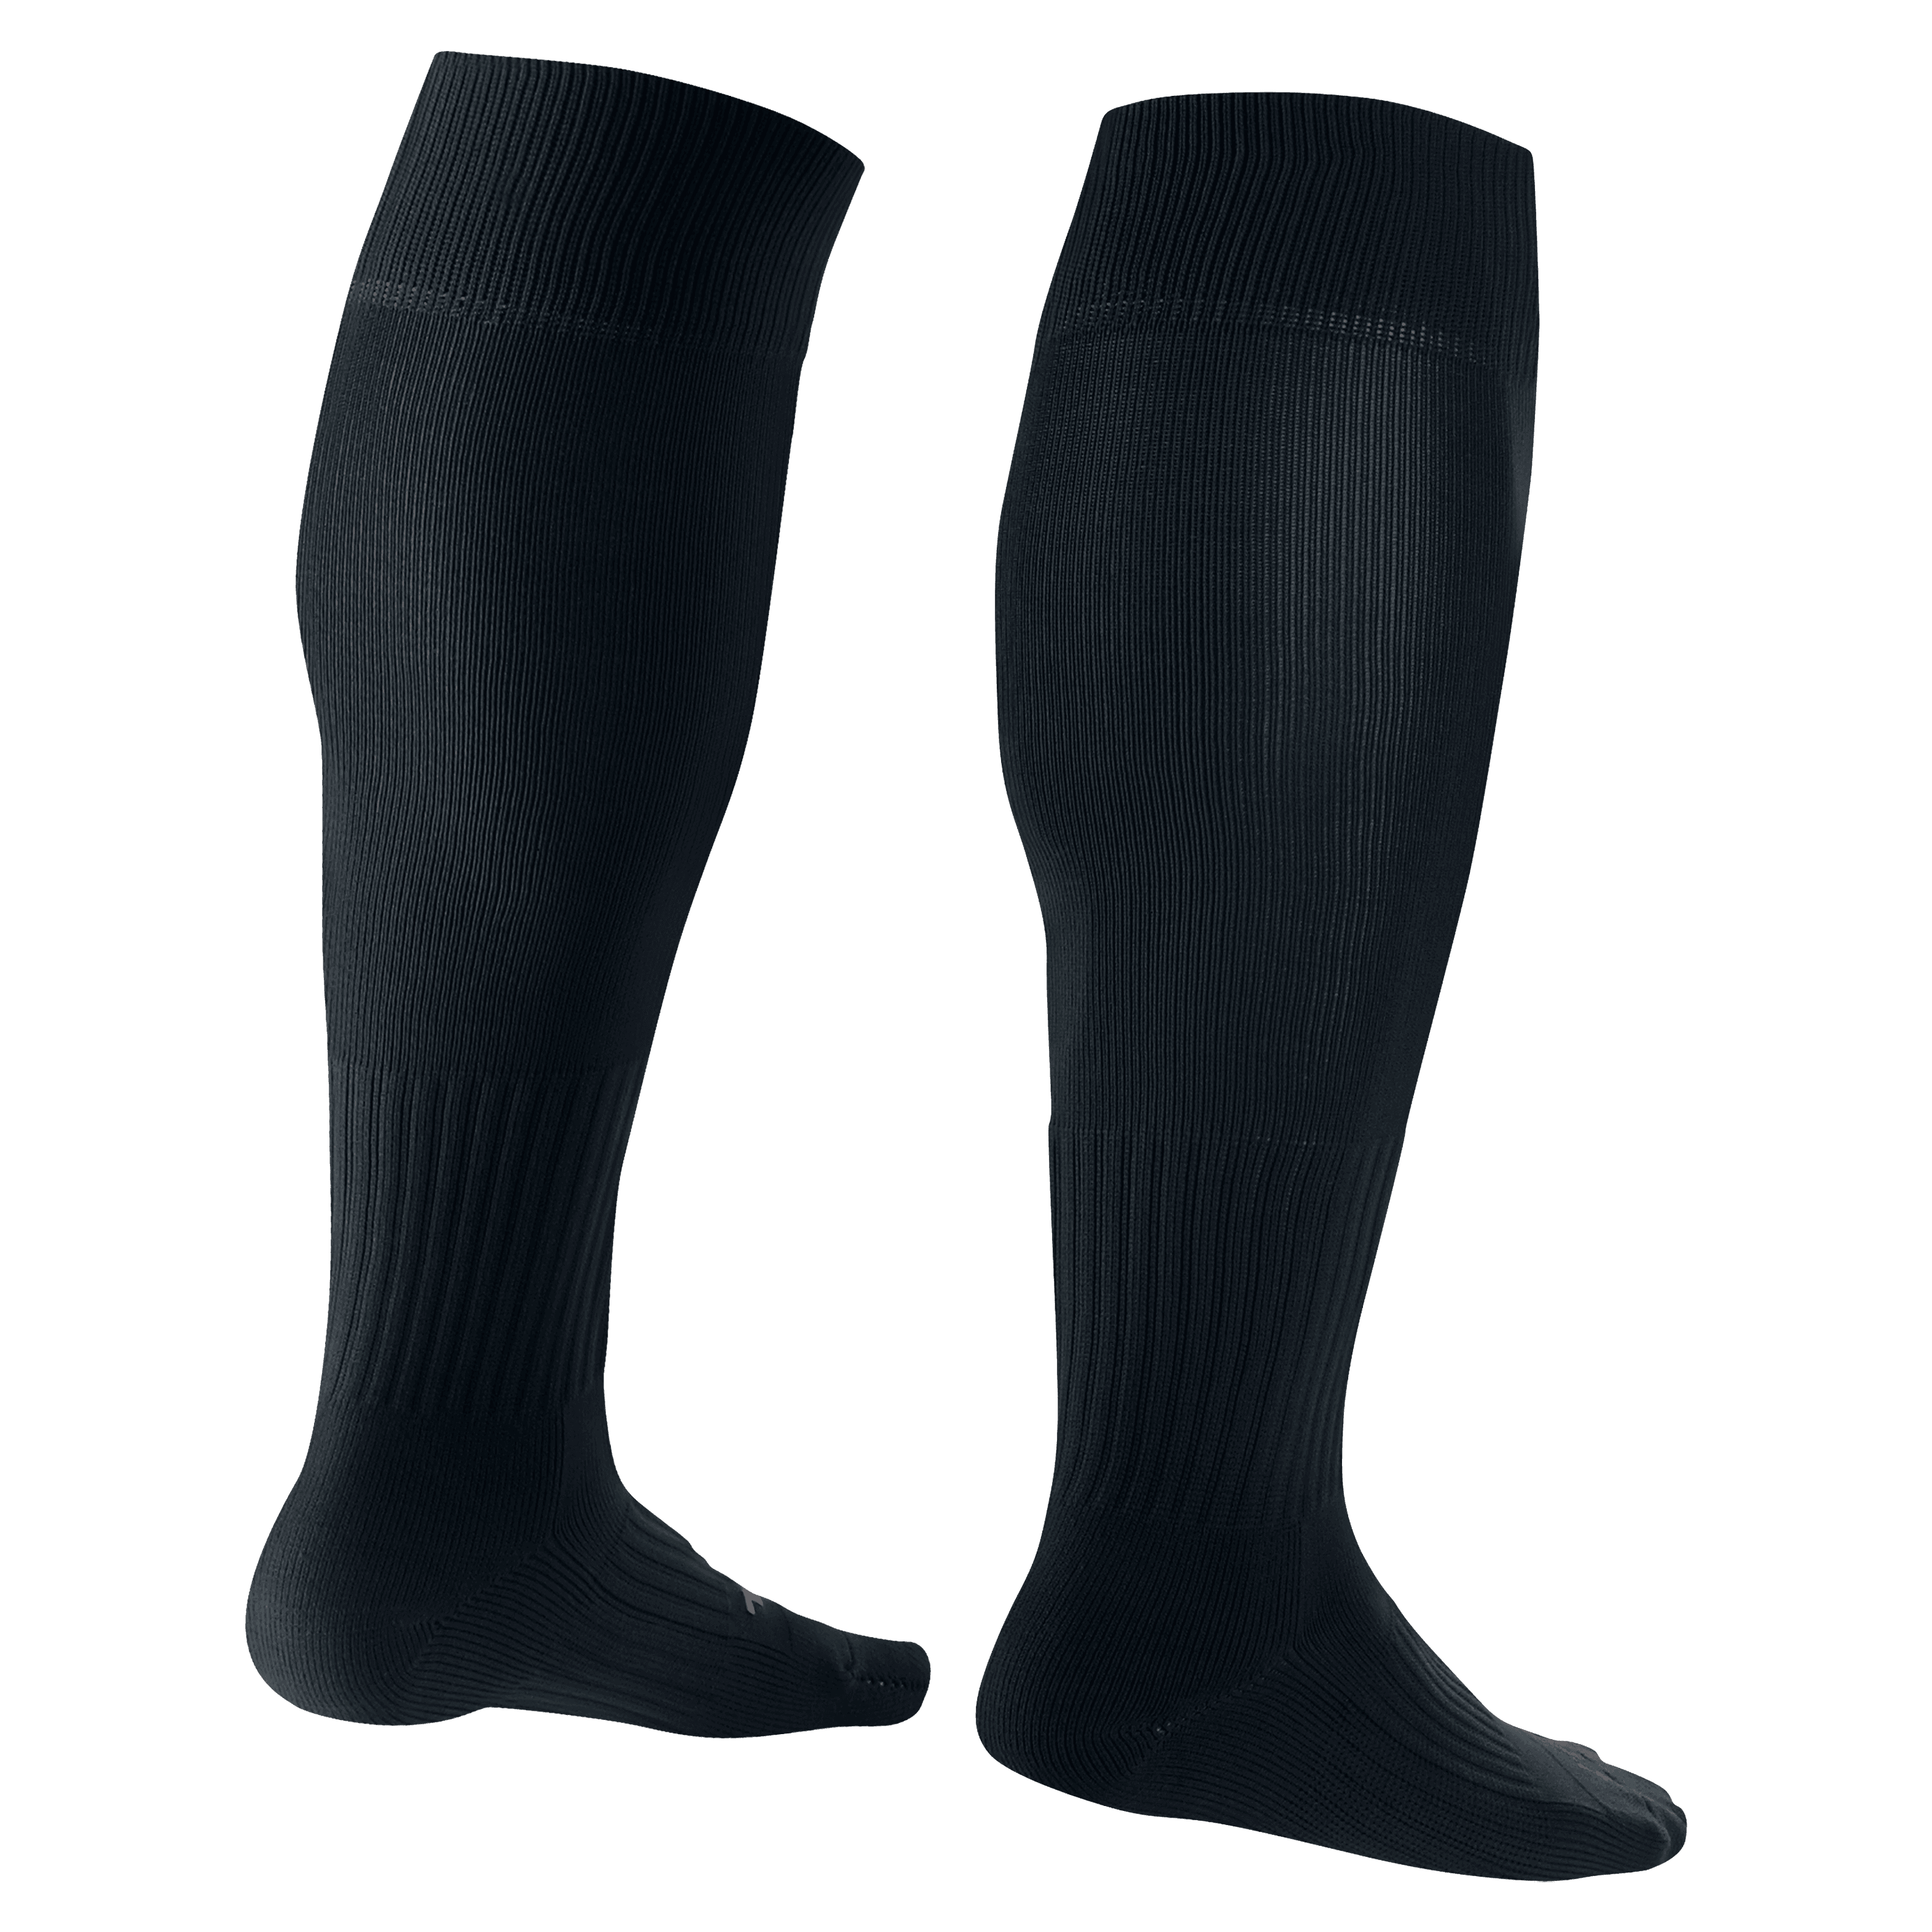 Nike Classic 2 Cushioned Over-the-Calf Socks-Black